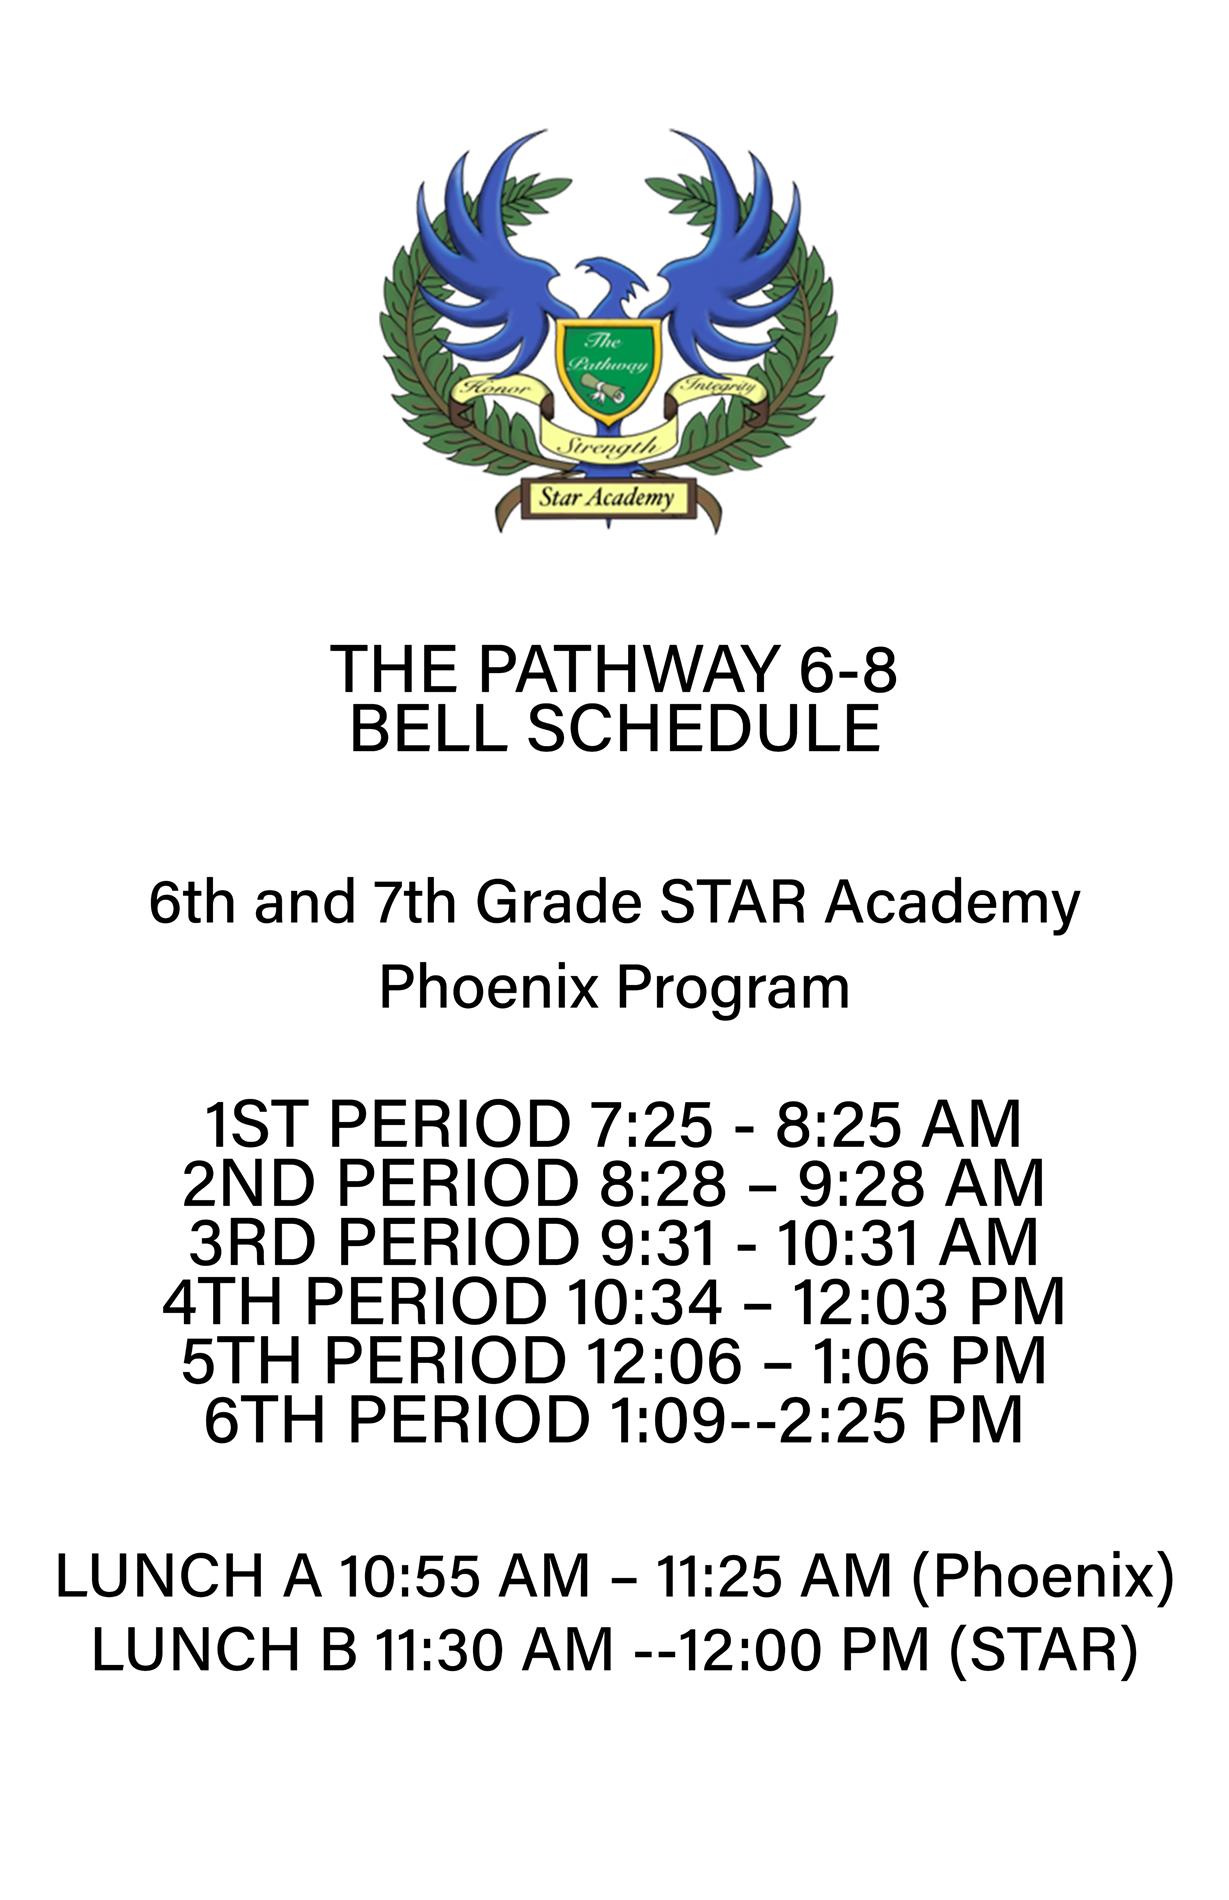 Star Academy Bell Schedule